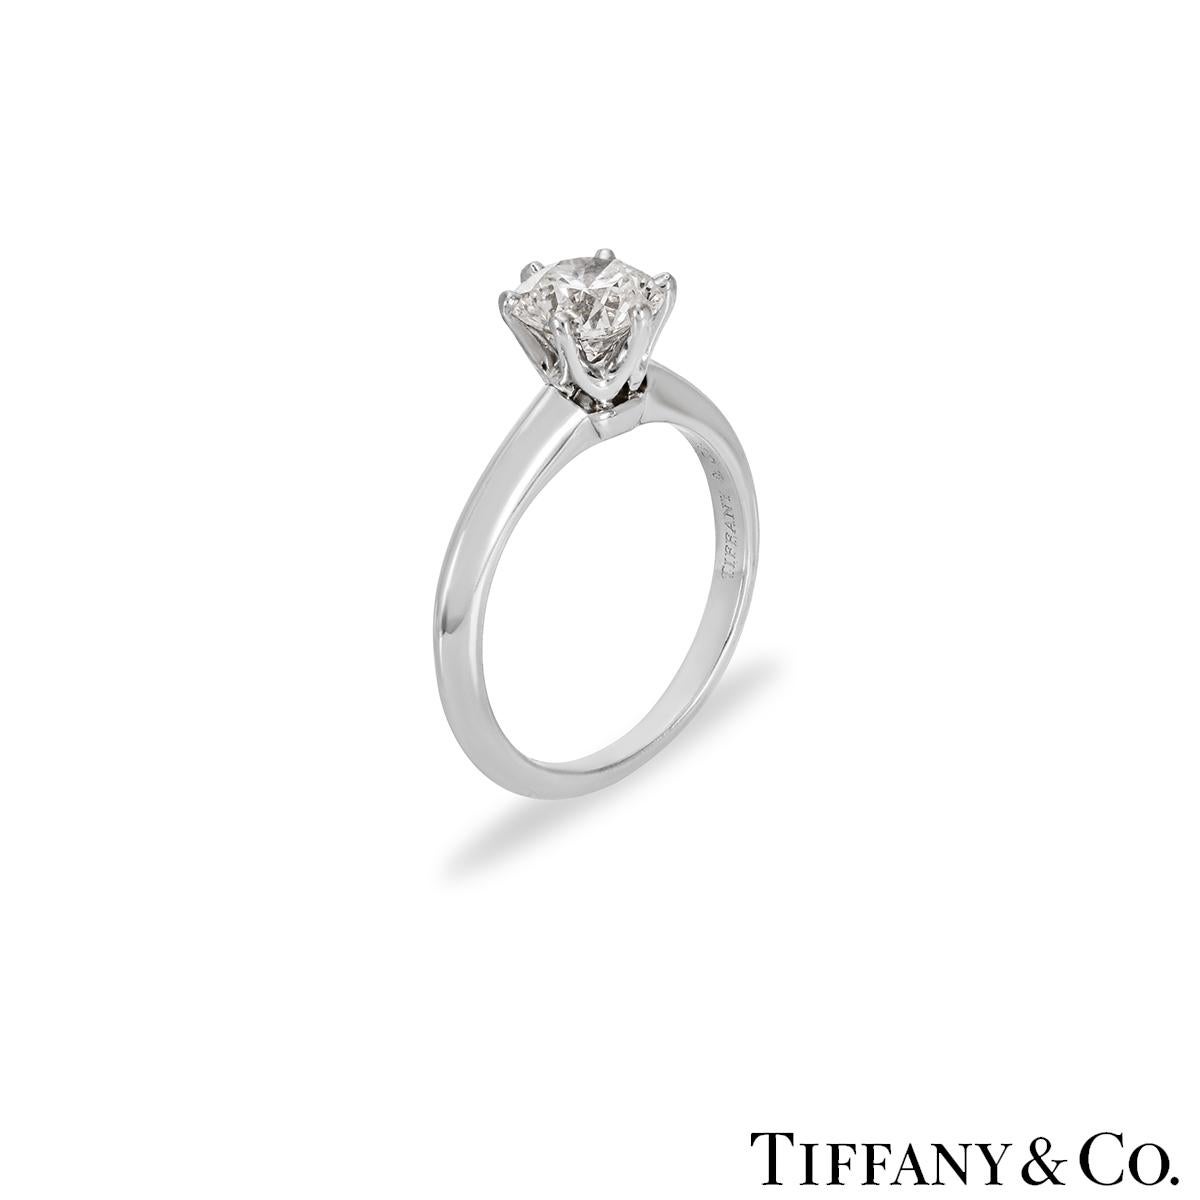 Une magnifique bague en platine sertie de diamants de Tiffany & Co. de la collection The Setting. La bague comprend un diamant rond de taille brillant dans une monture à 6 griffes, d'un poids de 1,01ct, de couleur E et de pureté VS1. La bague est